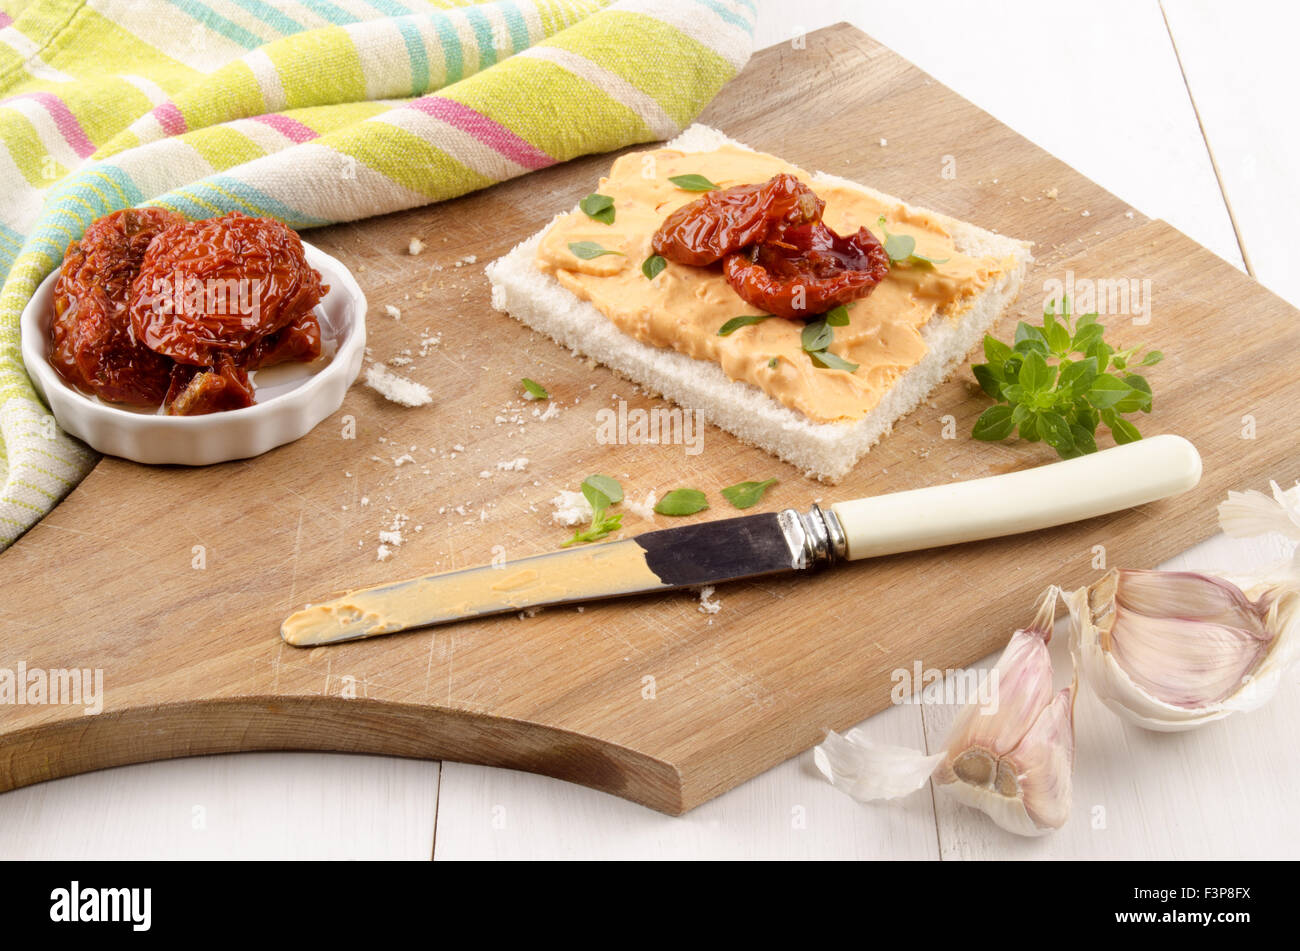 Mediterraneo formaggio morbido con pomodori secchi e basilico dolce Foto Stock